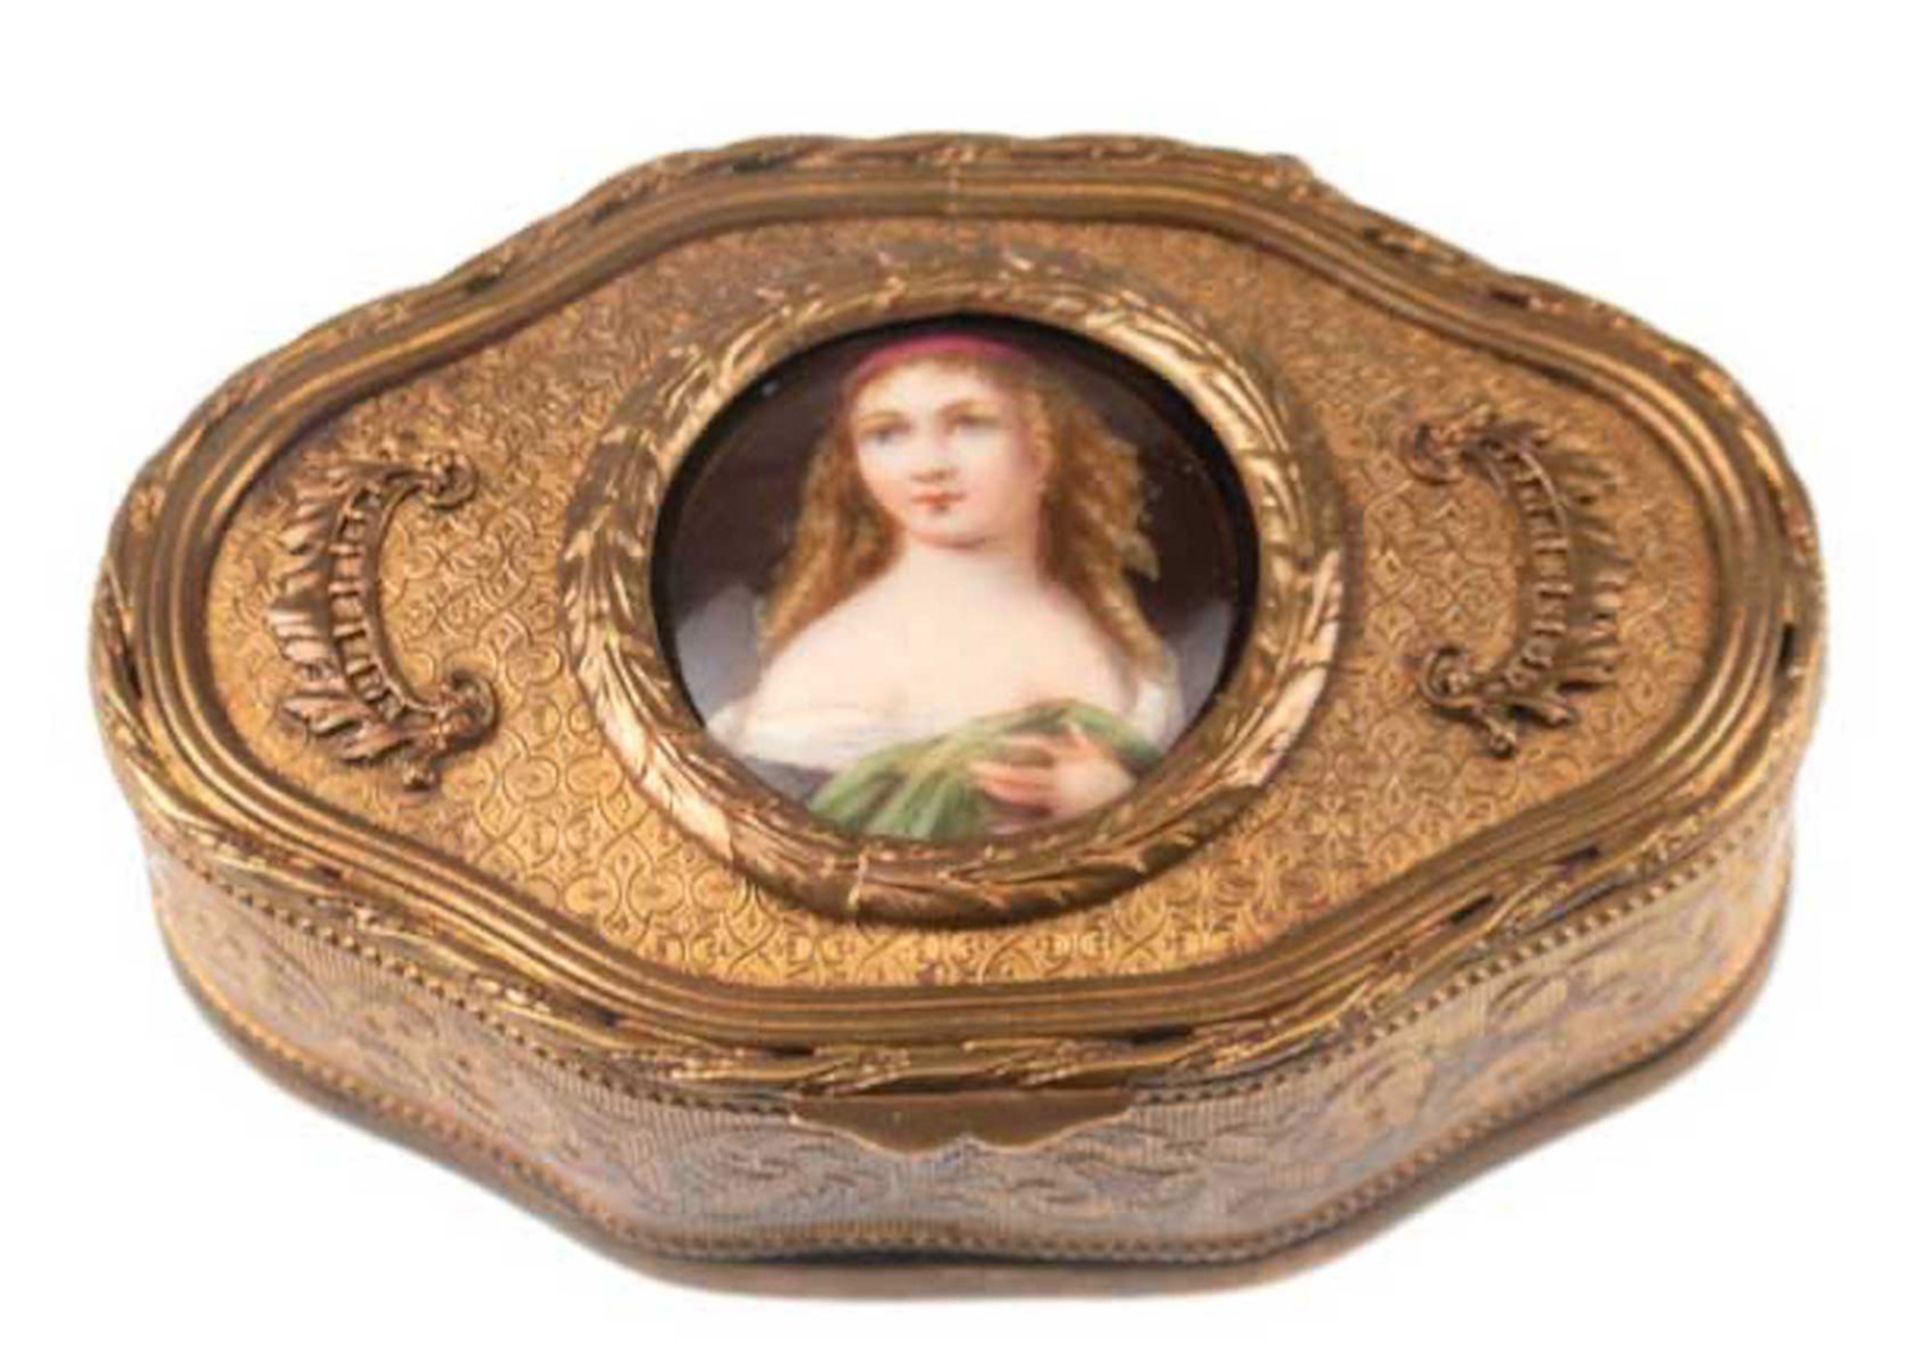 Schmuck-Dose, mit Porzellan-Miniatur "Porträt einer jungen Dame", um 1860, Messing,reliefier